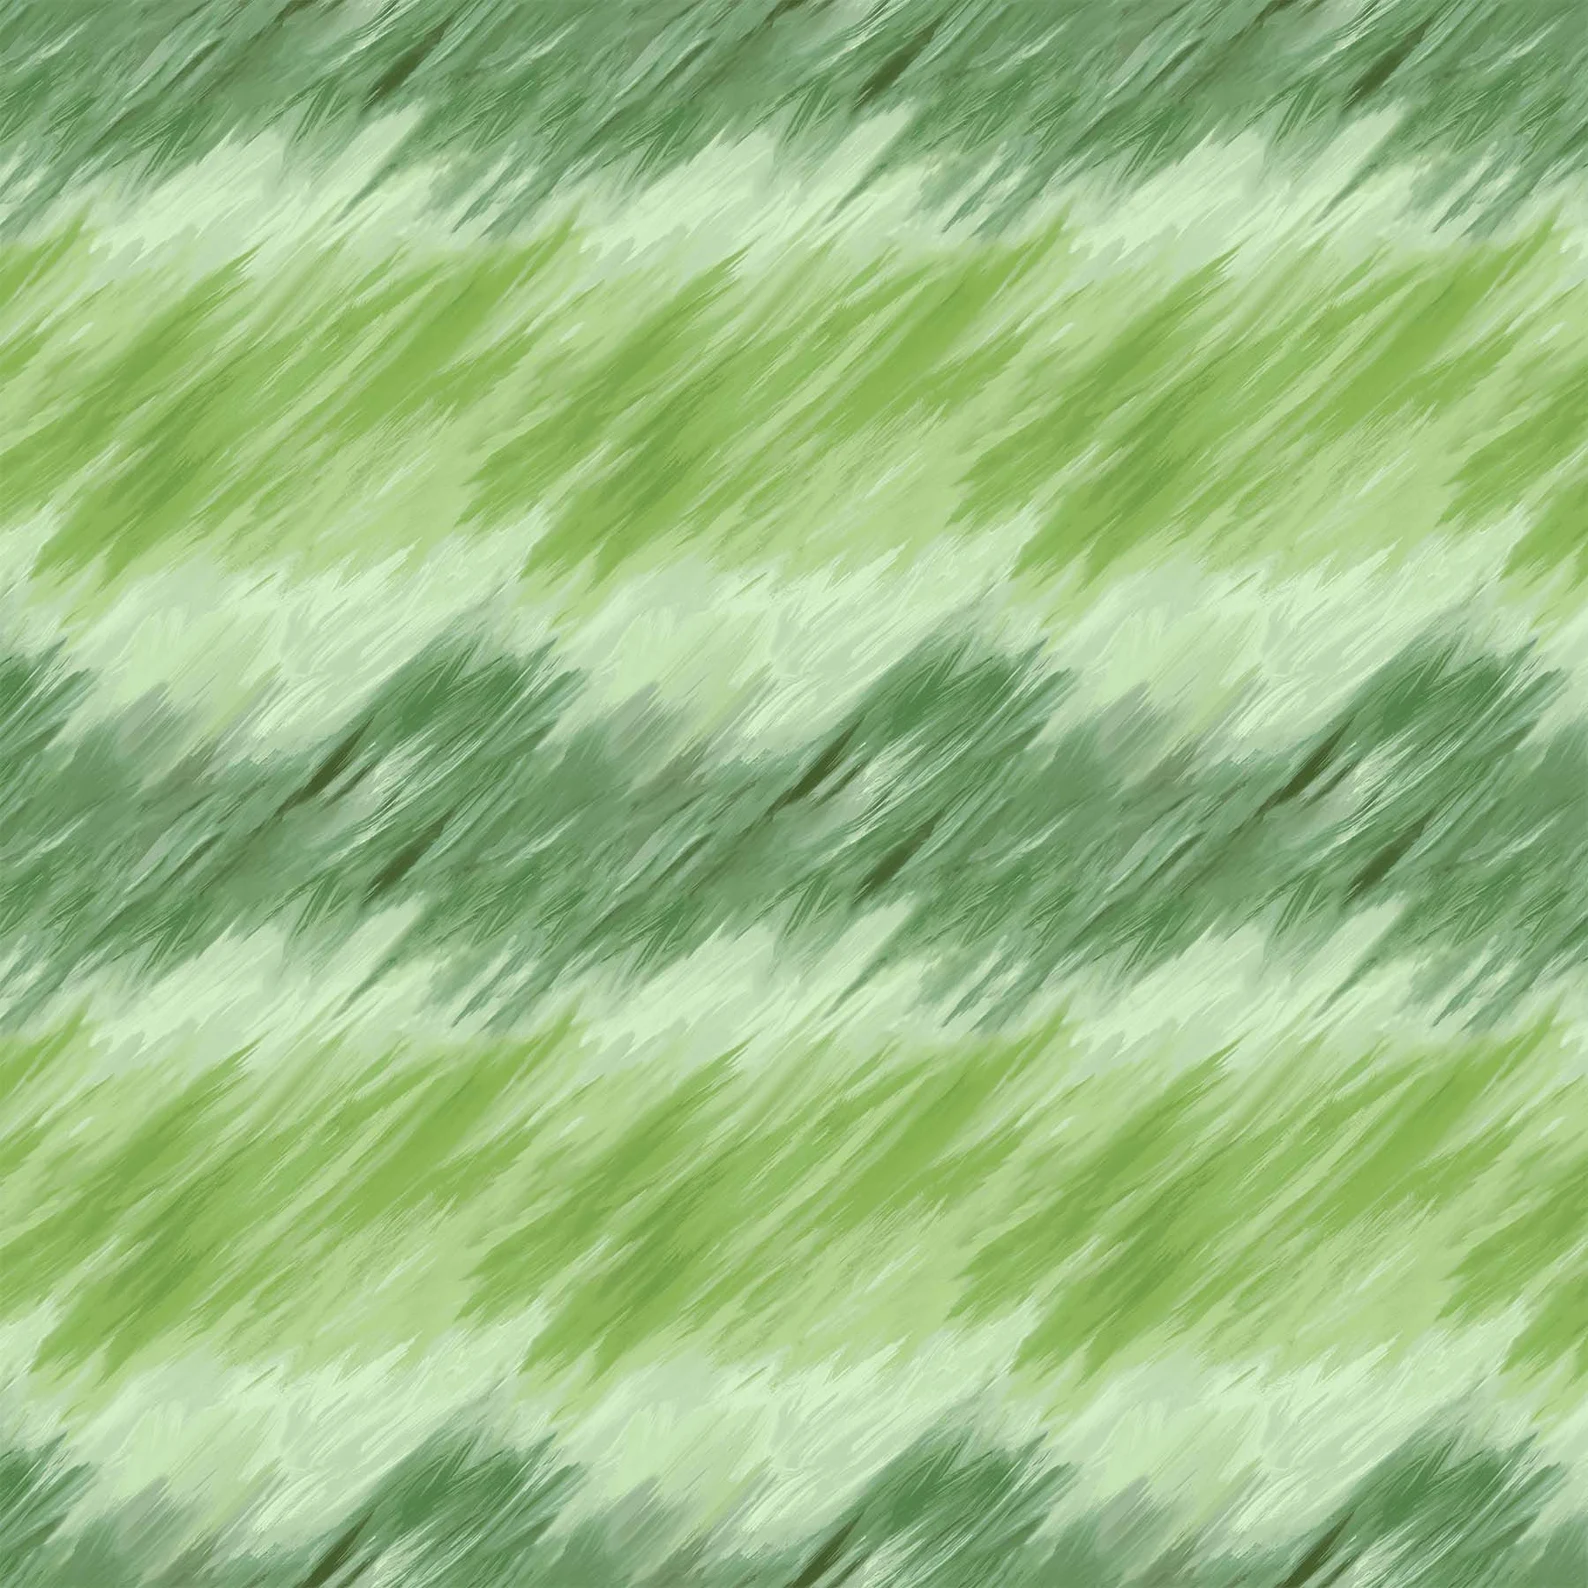 FIGO Fabrics Refresh Green Brush Strokes